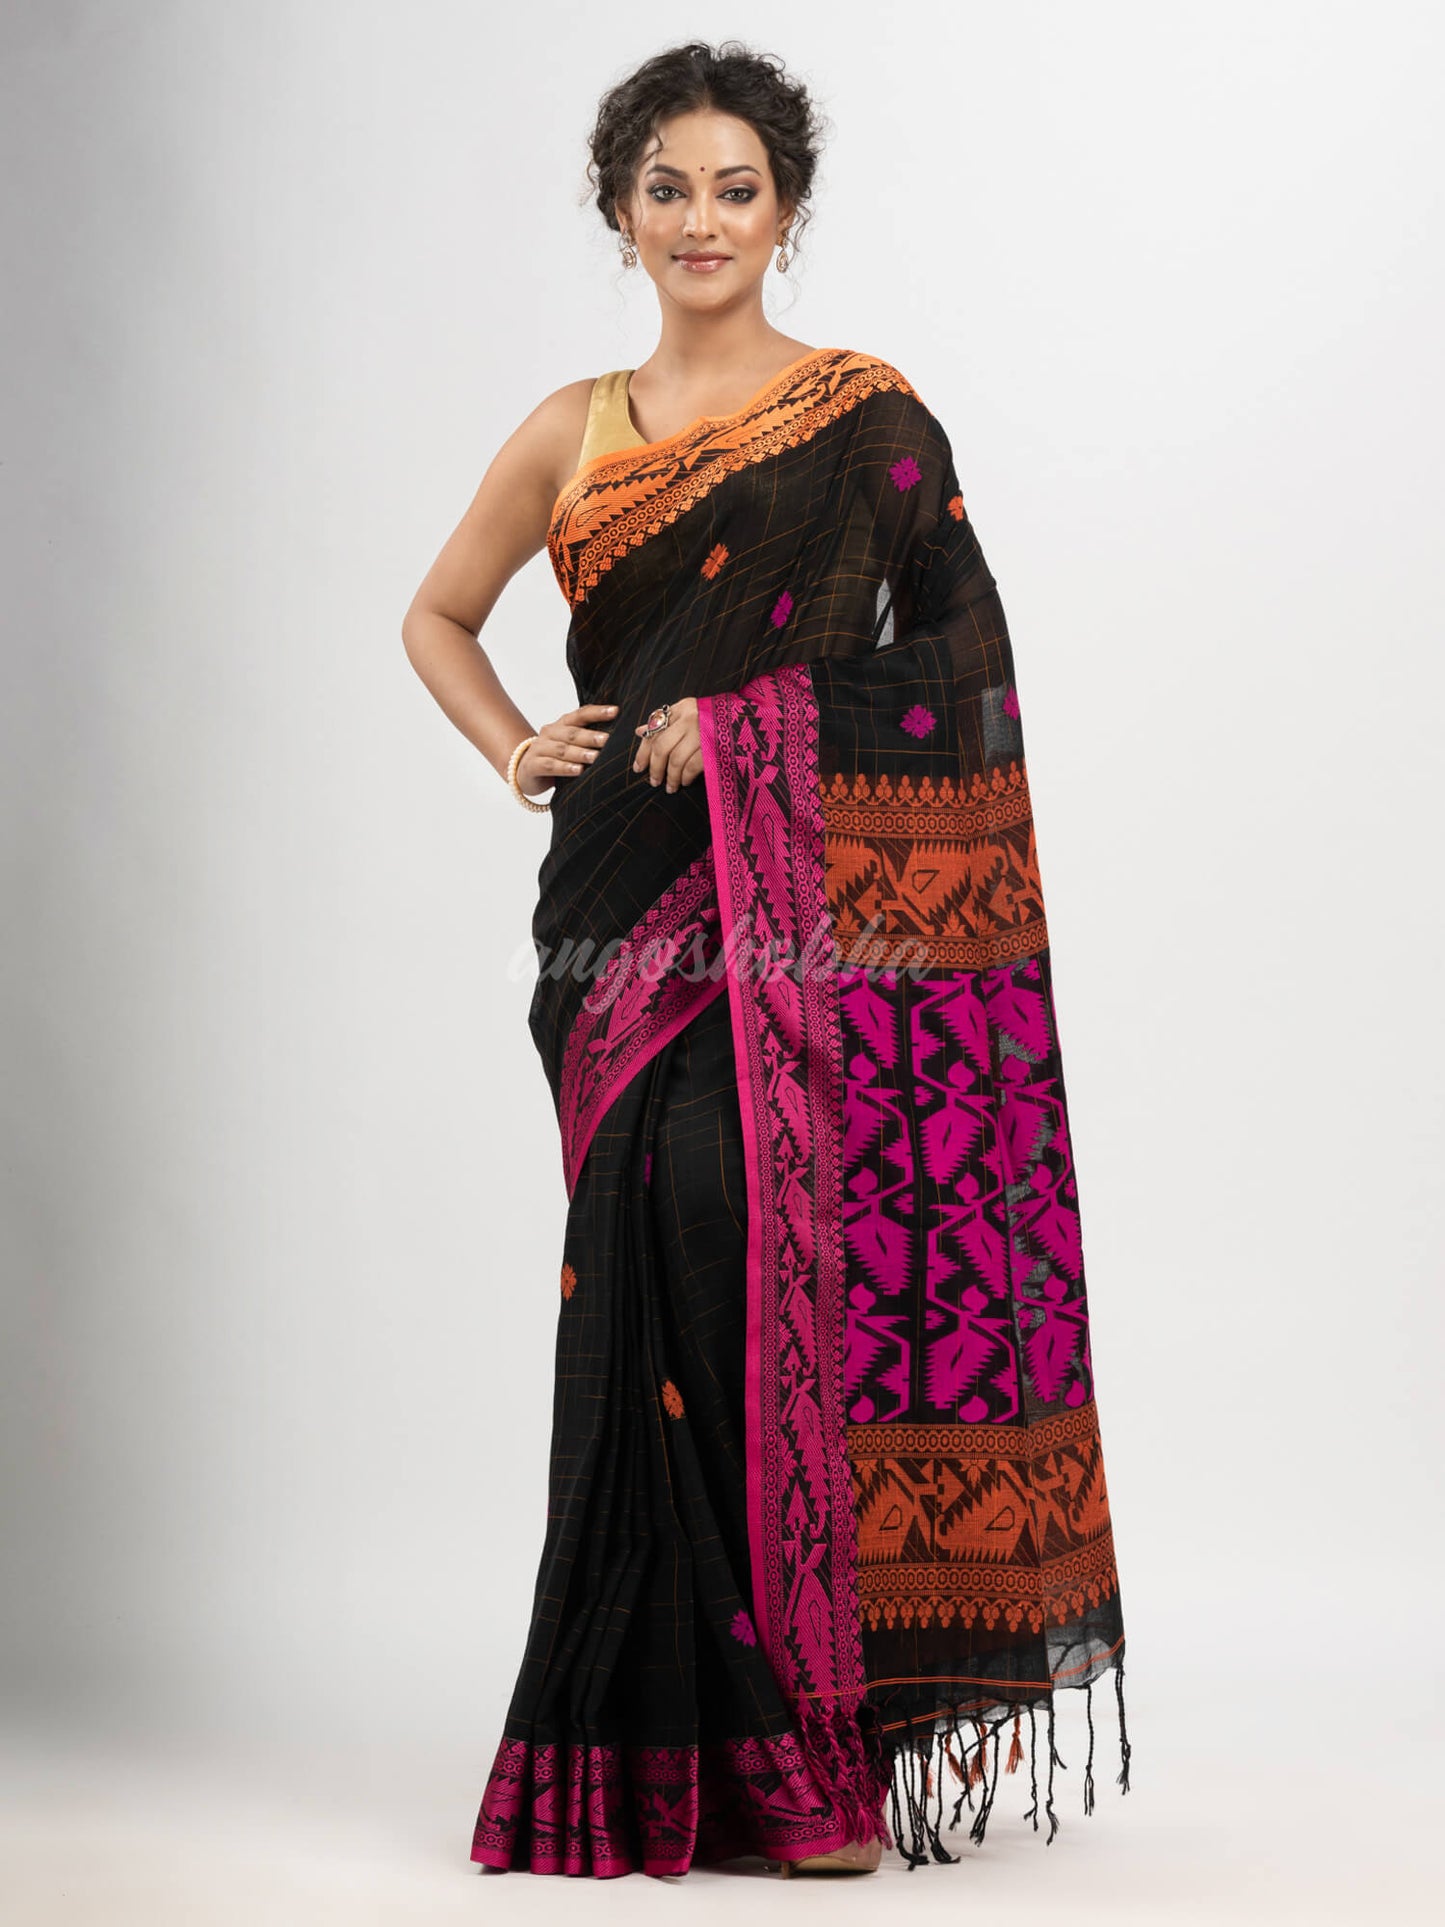 Black cotton all body tai dai with pallu jacquard and ganga jamuna jacquard broder handloom saree